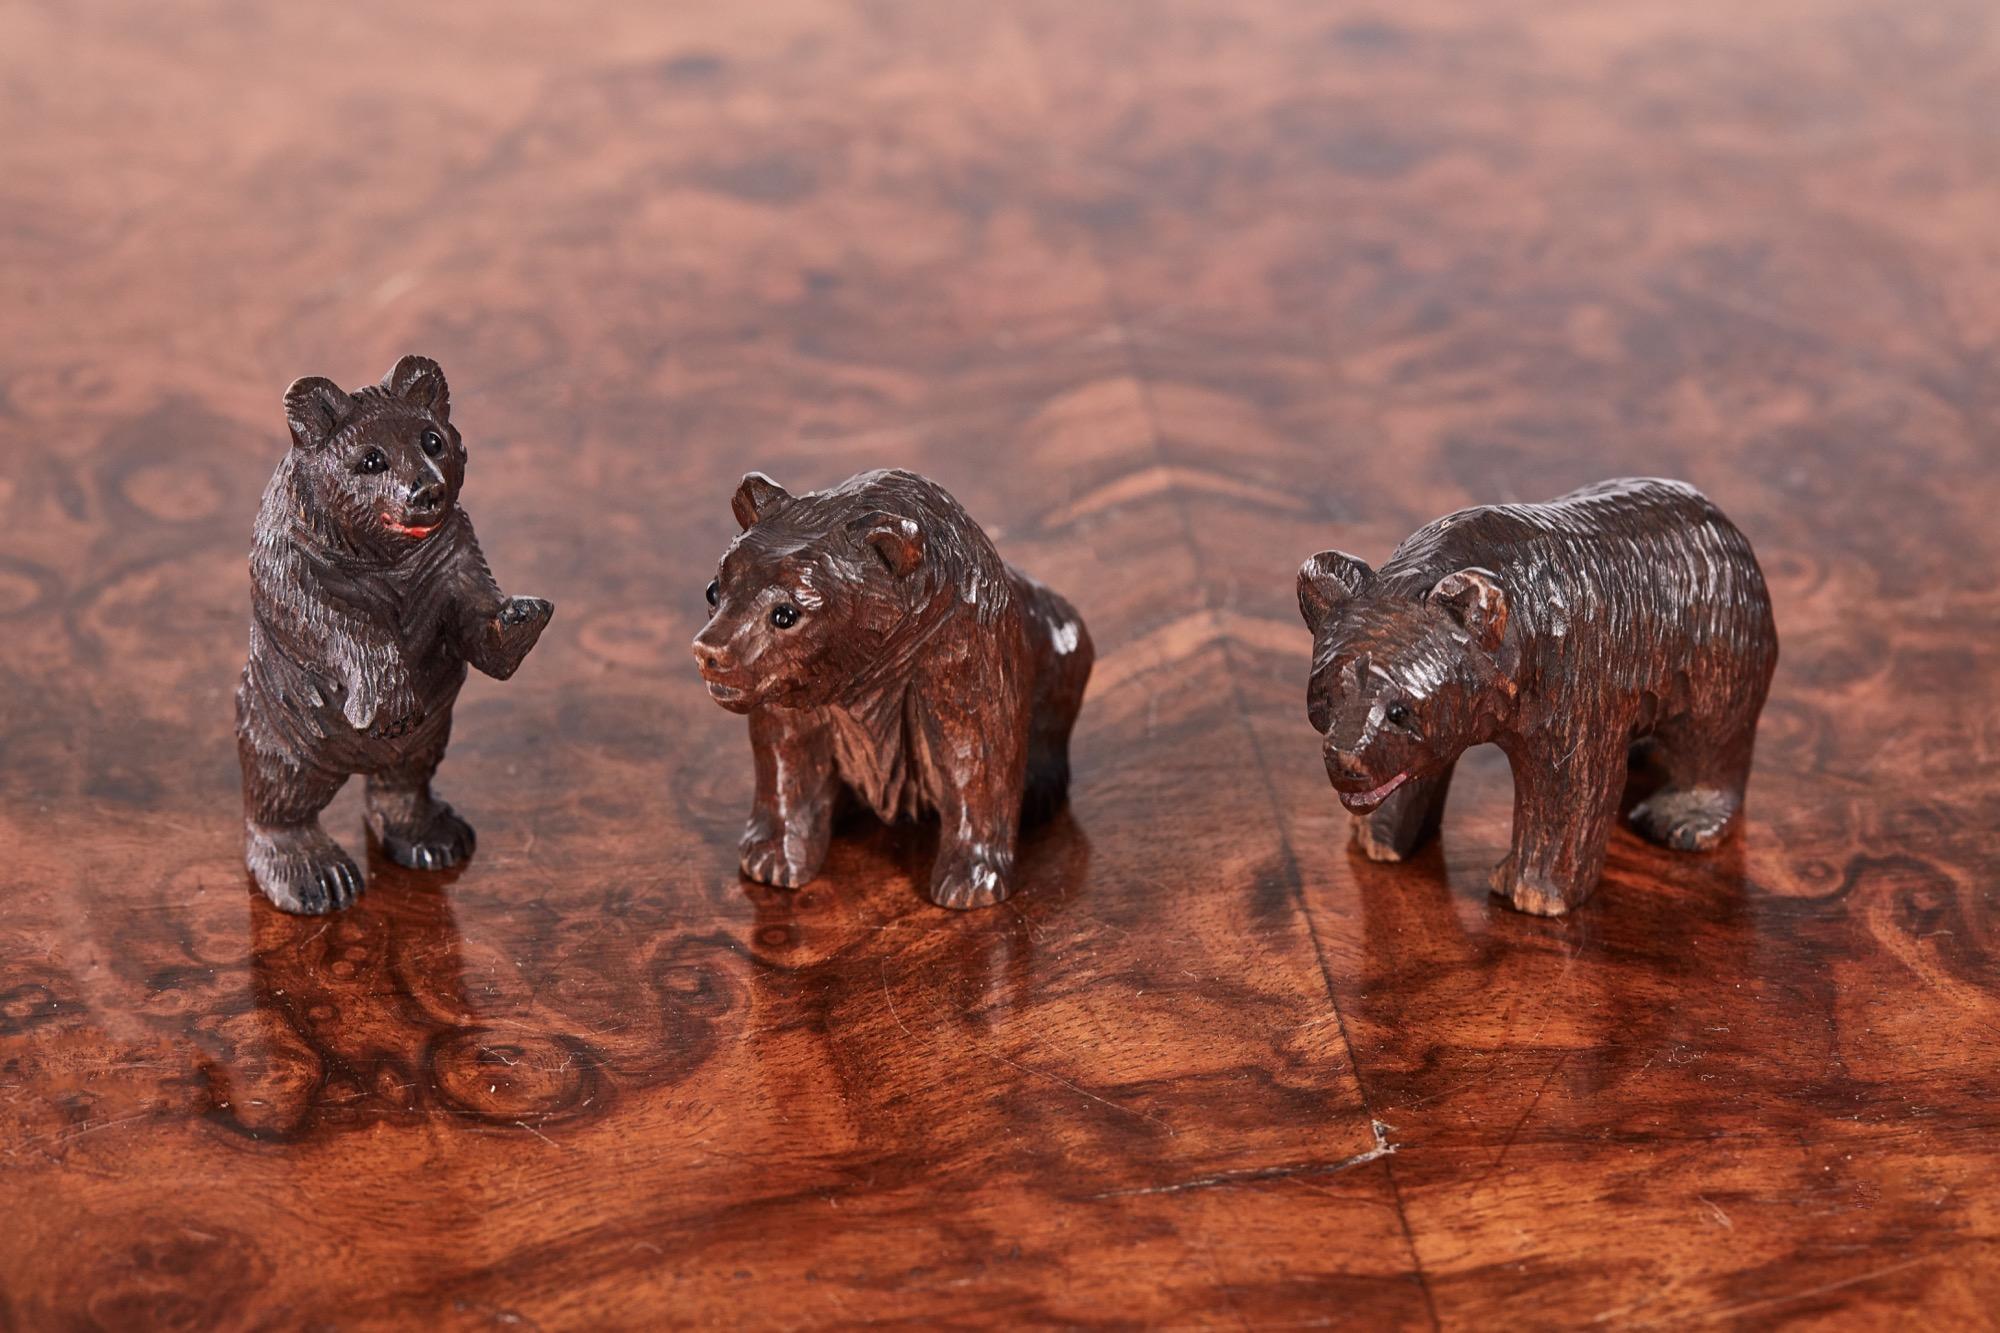 Quinze ours de la forêt noire sculptés en miniature au XIXe siècle. Certains debout, d'autres assis, certains avec des yeux de verre originaux. En très bon état d'origine.
 
Une collection charmante avec des sculptures de qualité